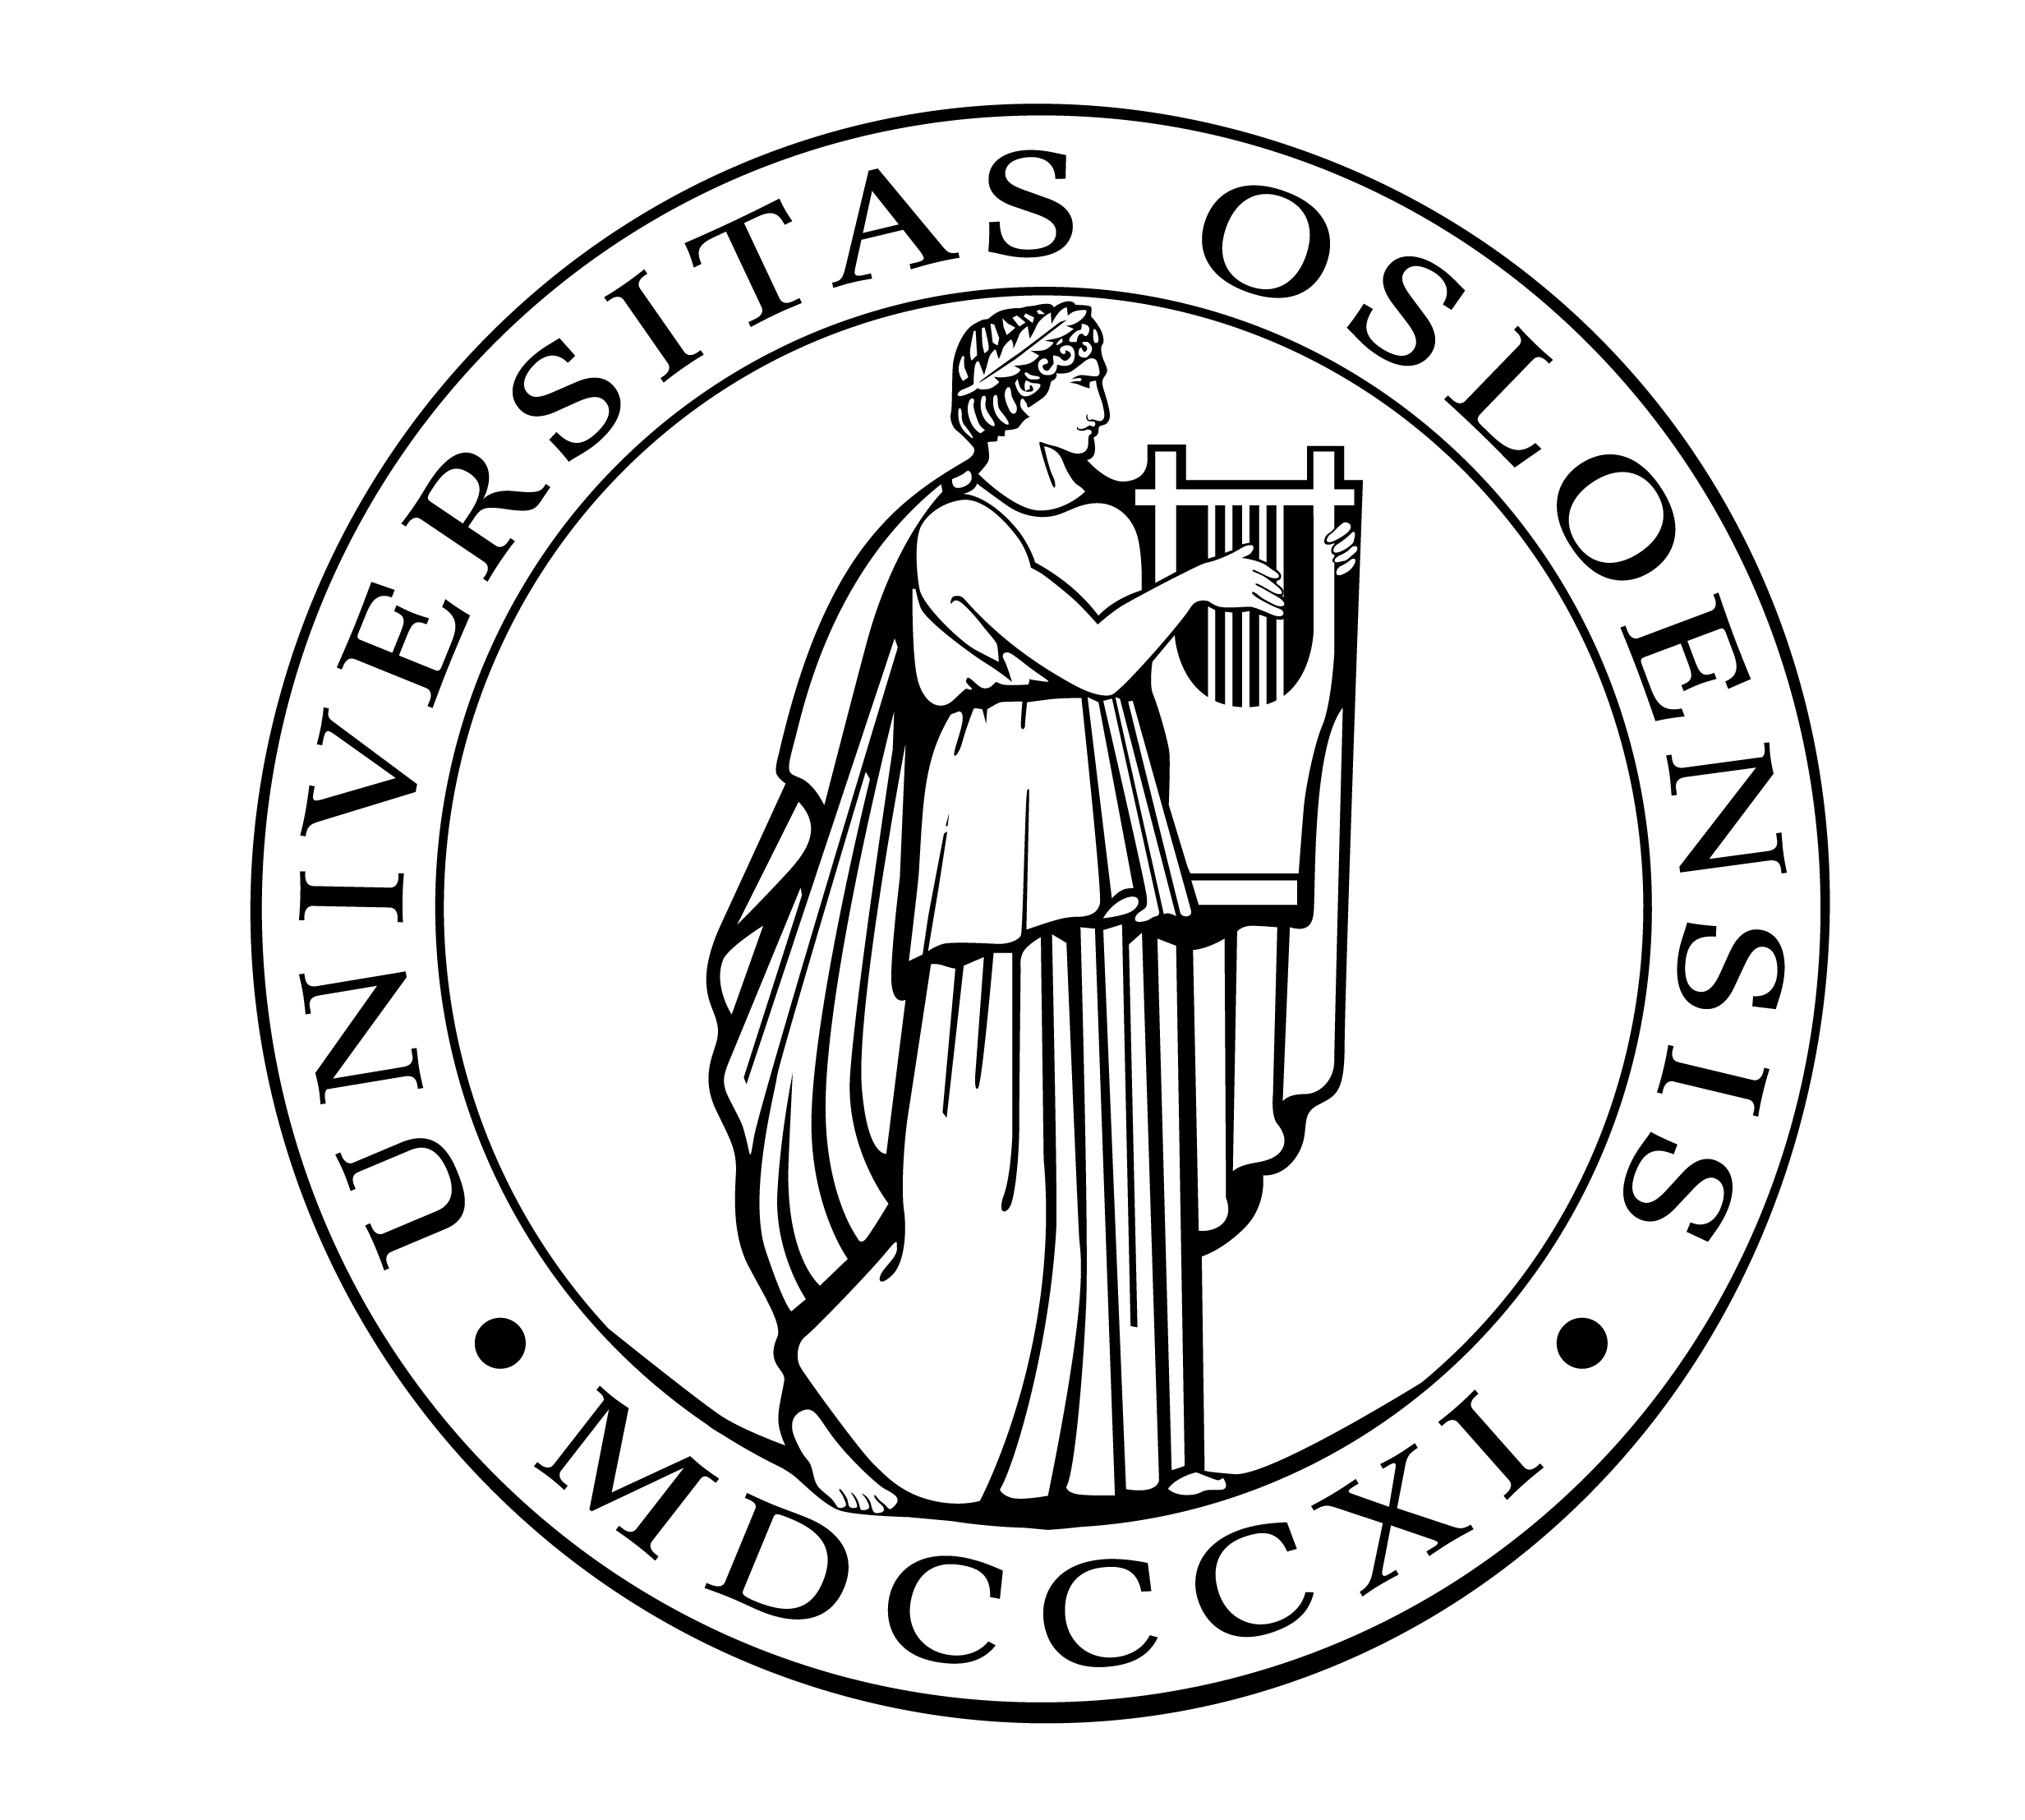 Universtity of Oslo's logo